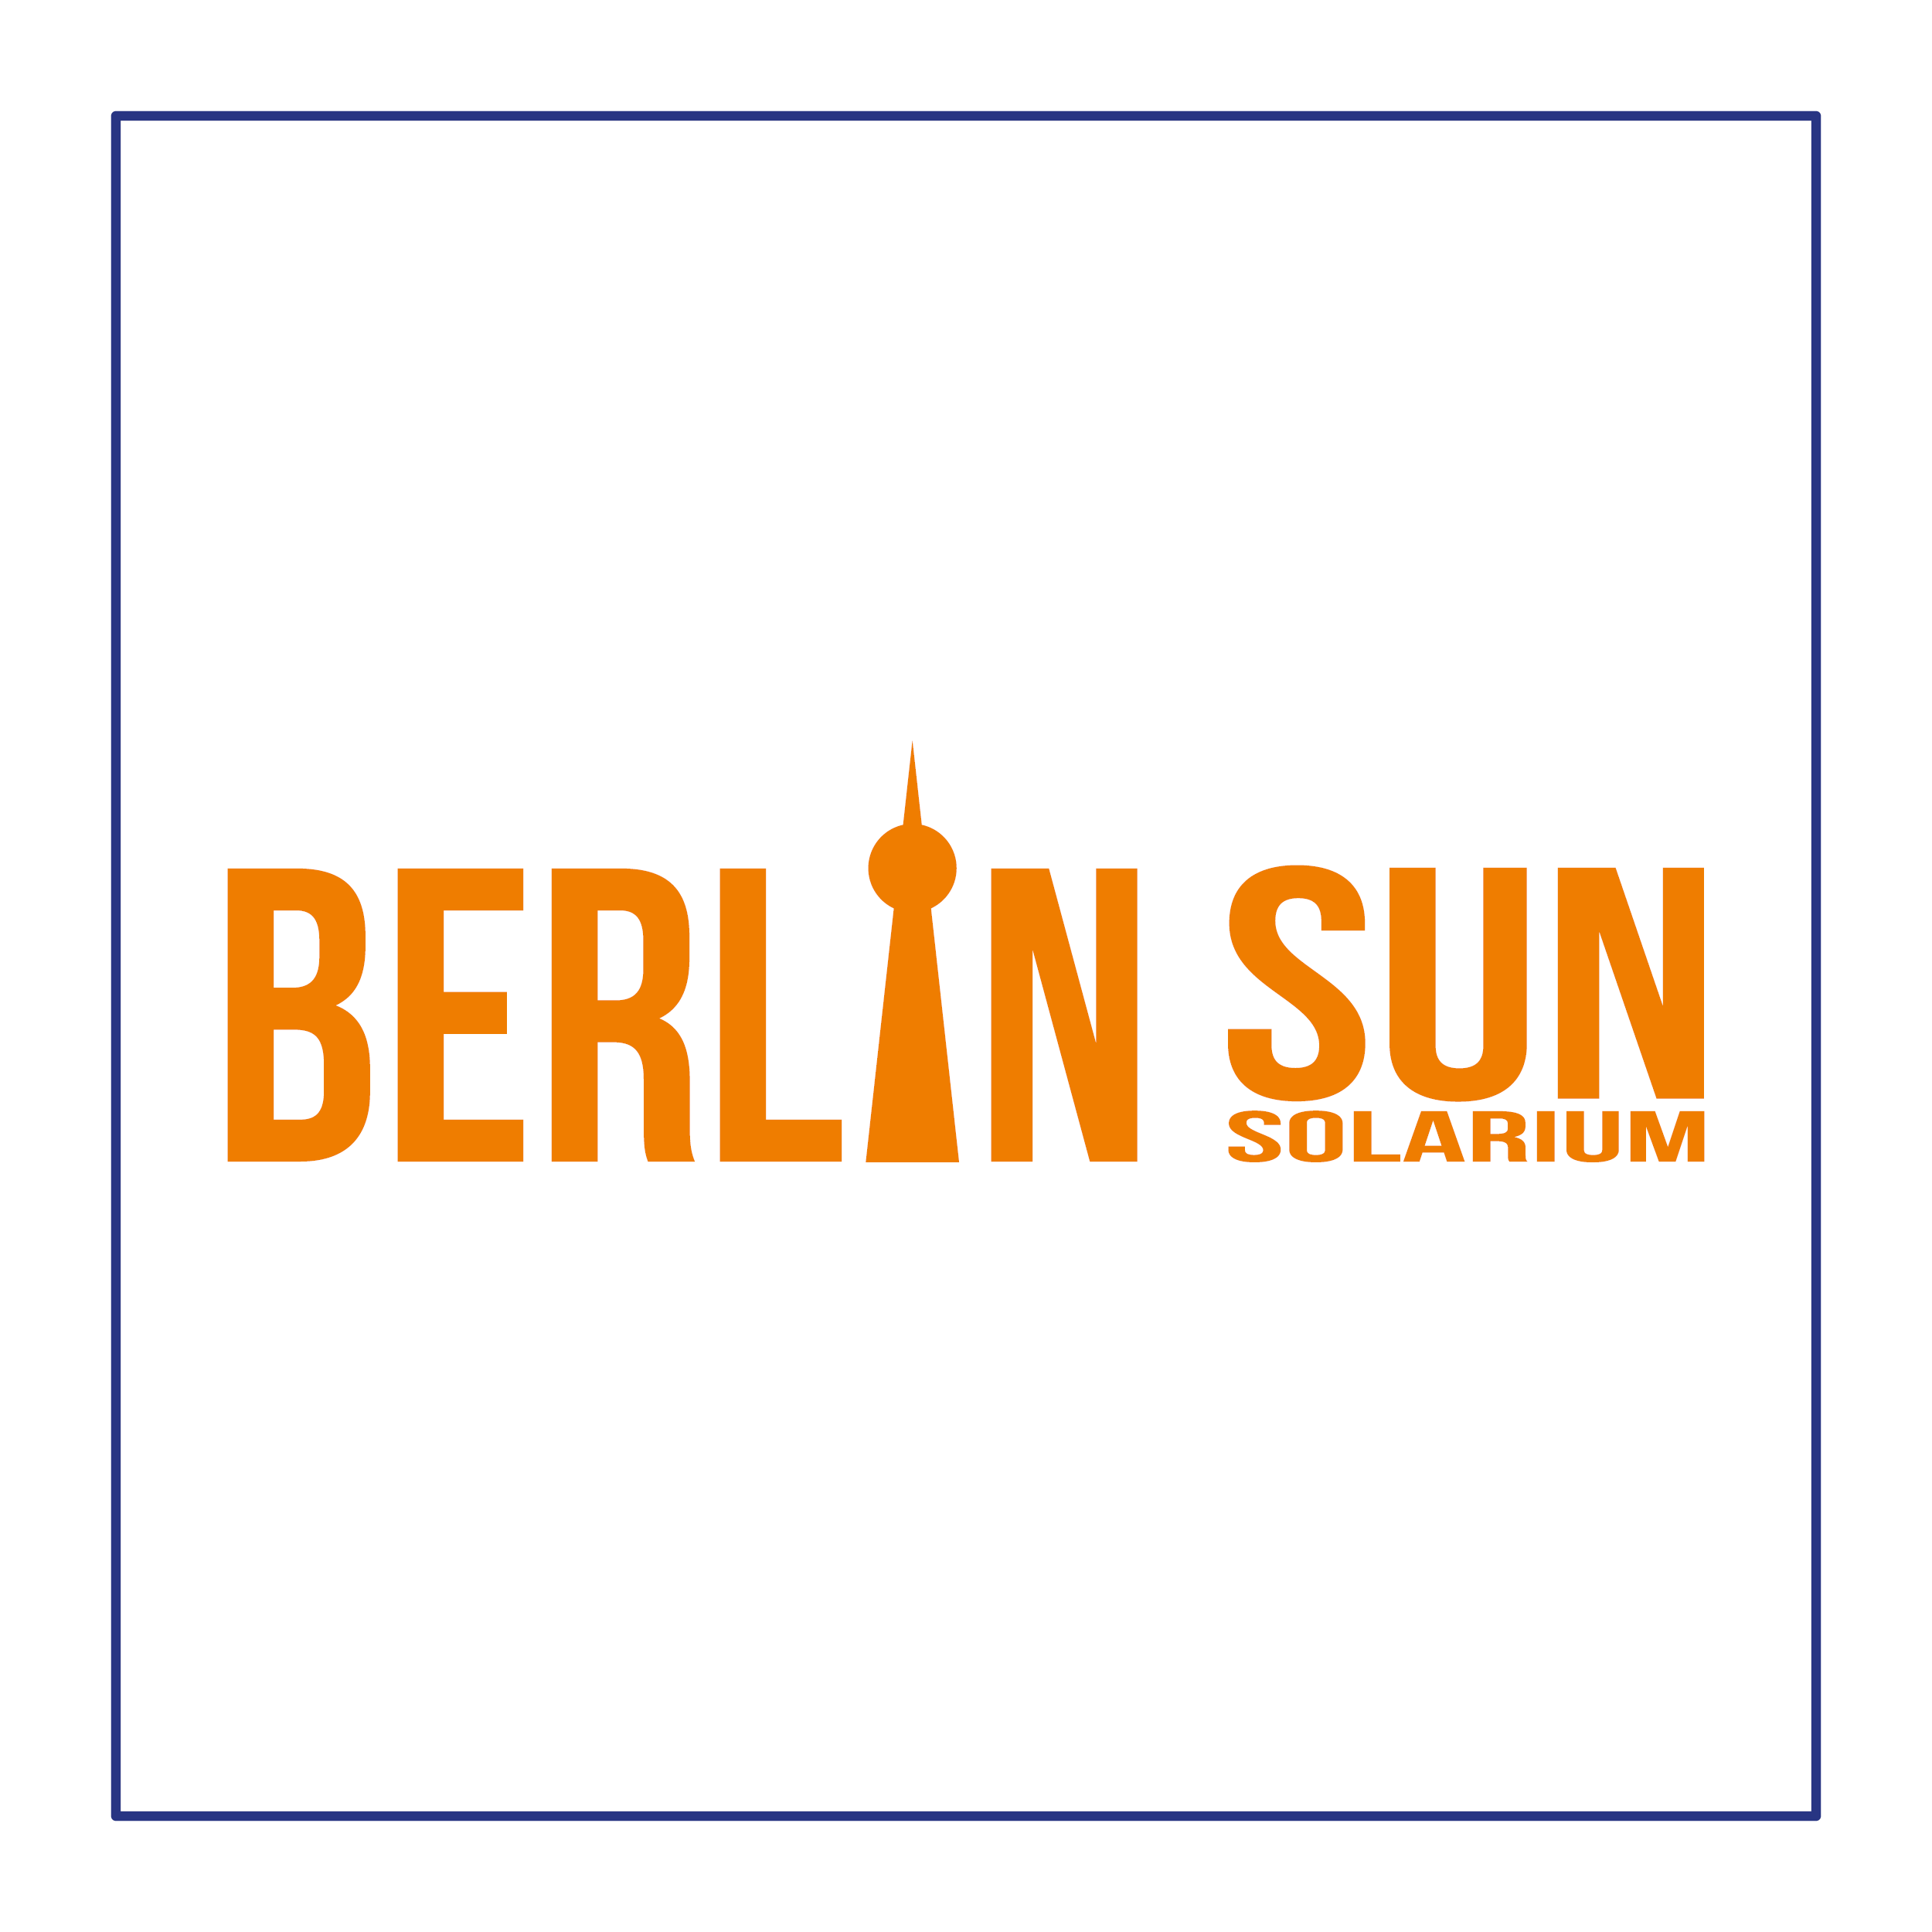 Berlin Sun